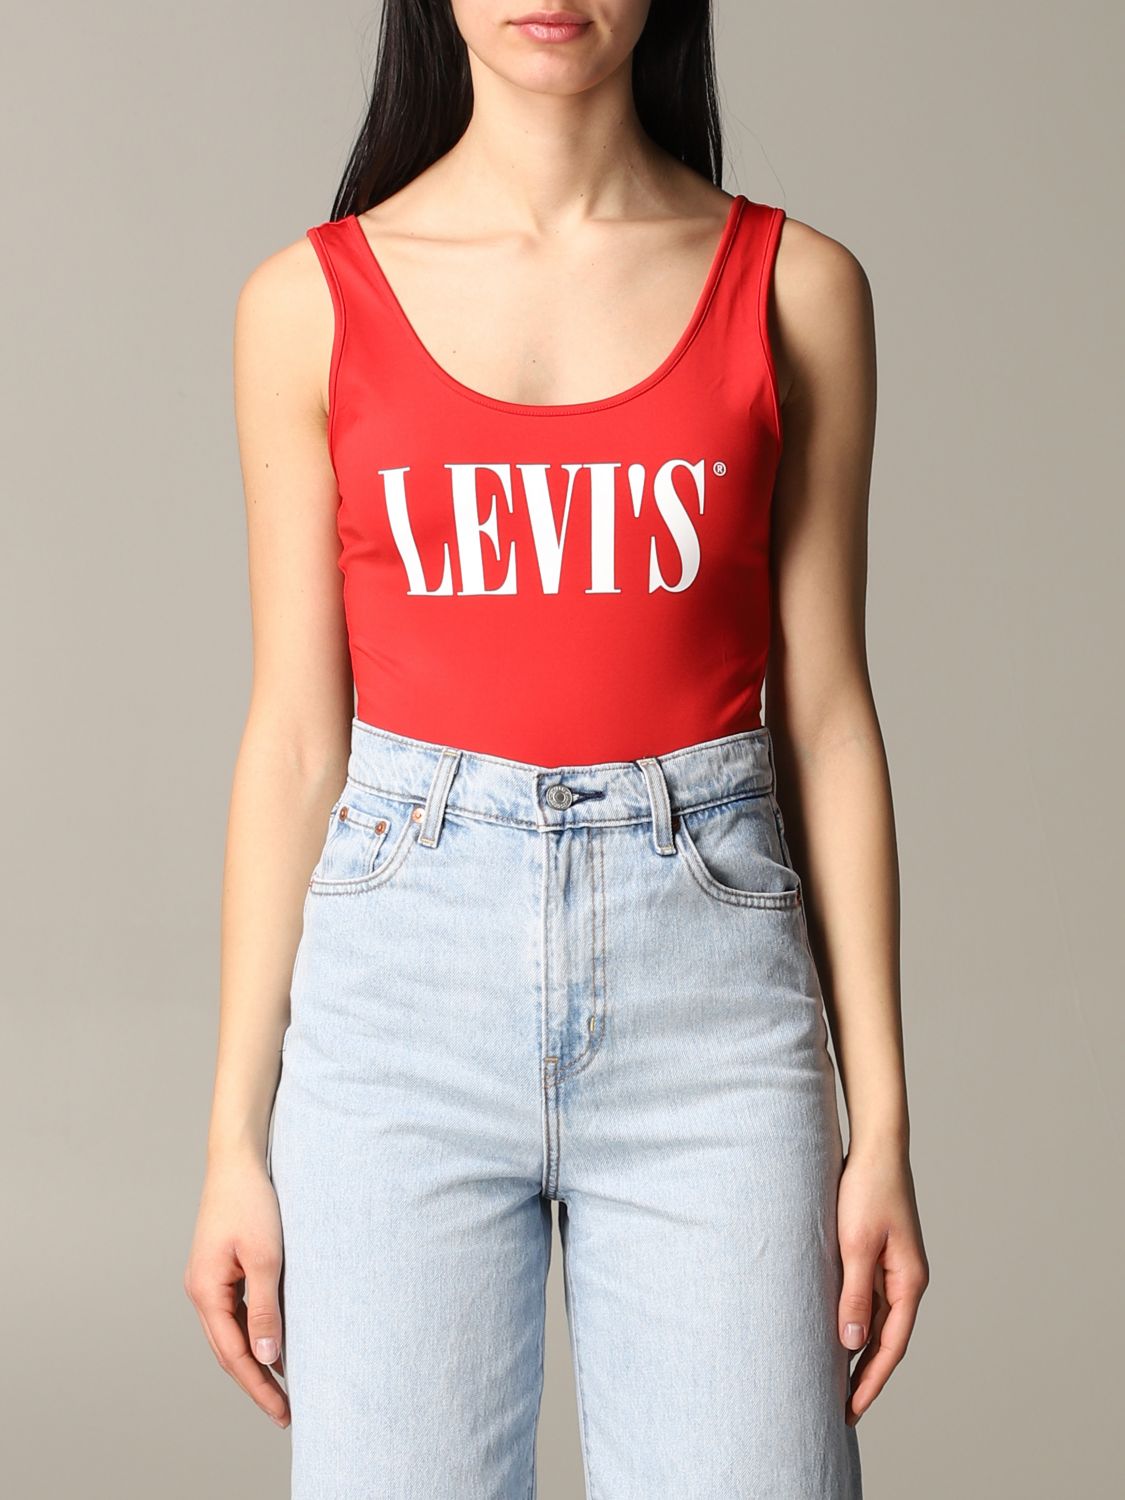 levis shirt womens uk